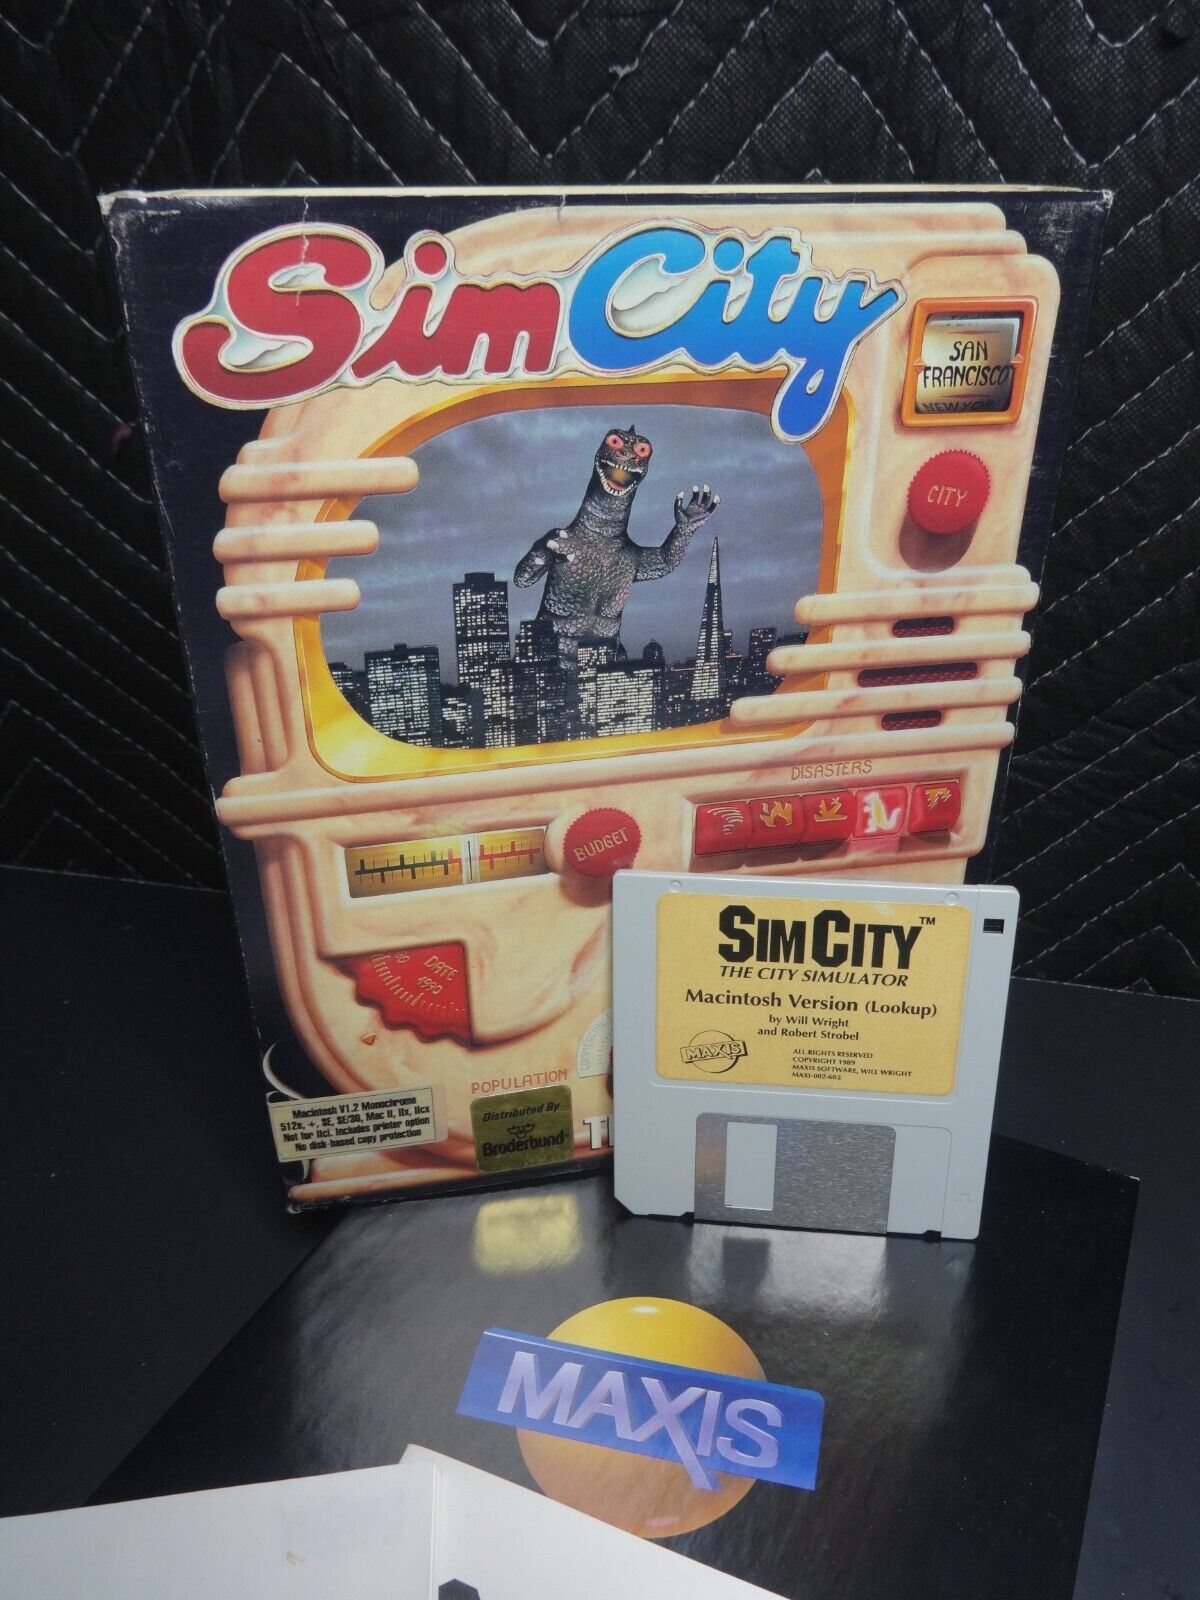 THE ORIGINAL SIMCITY SIM CITY for Macintosh V1.2 Monochrome Box Game on 3.5"